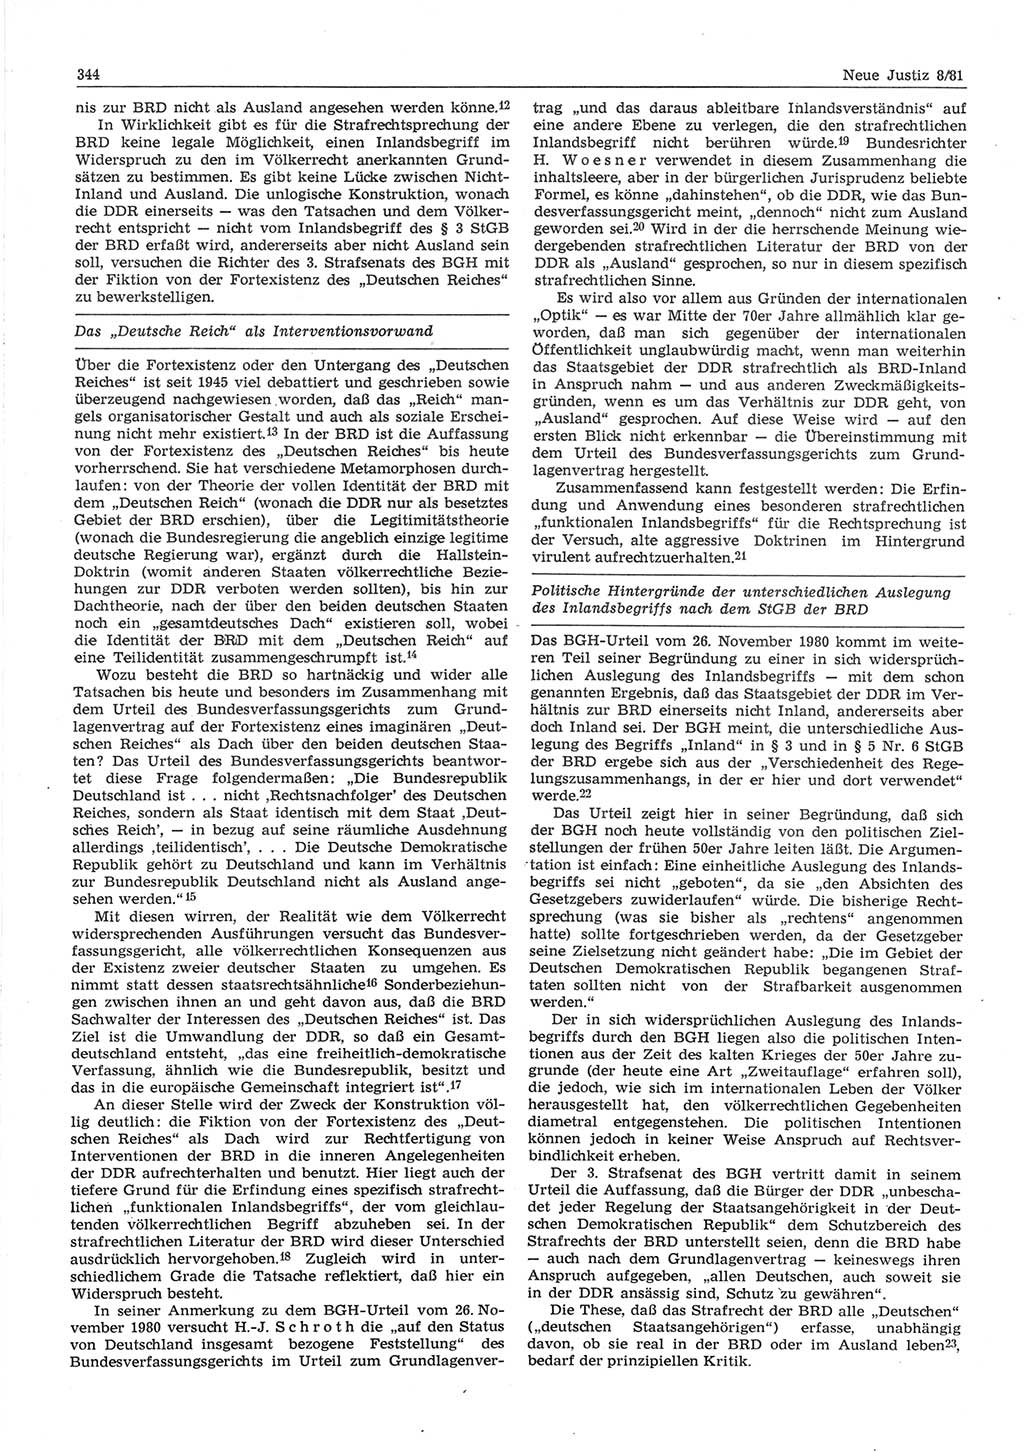 Neue Justiz (NJ), Zeitschrift für sozialistisches Recht und Gesetzlichkeit [Deutsche Demokratische Republik (DDR)], 35. Jahrgang 1981, Seite 344 (NJ DDR 1981, S. 344)